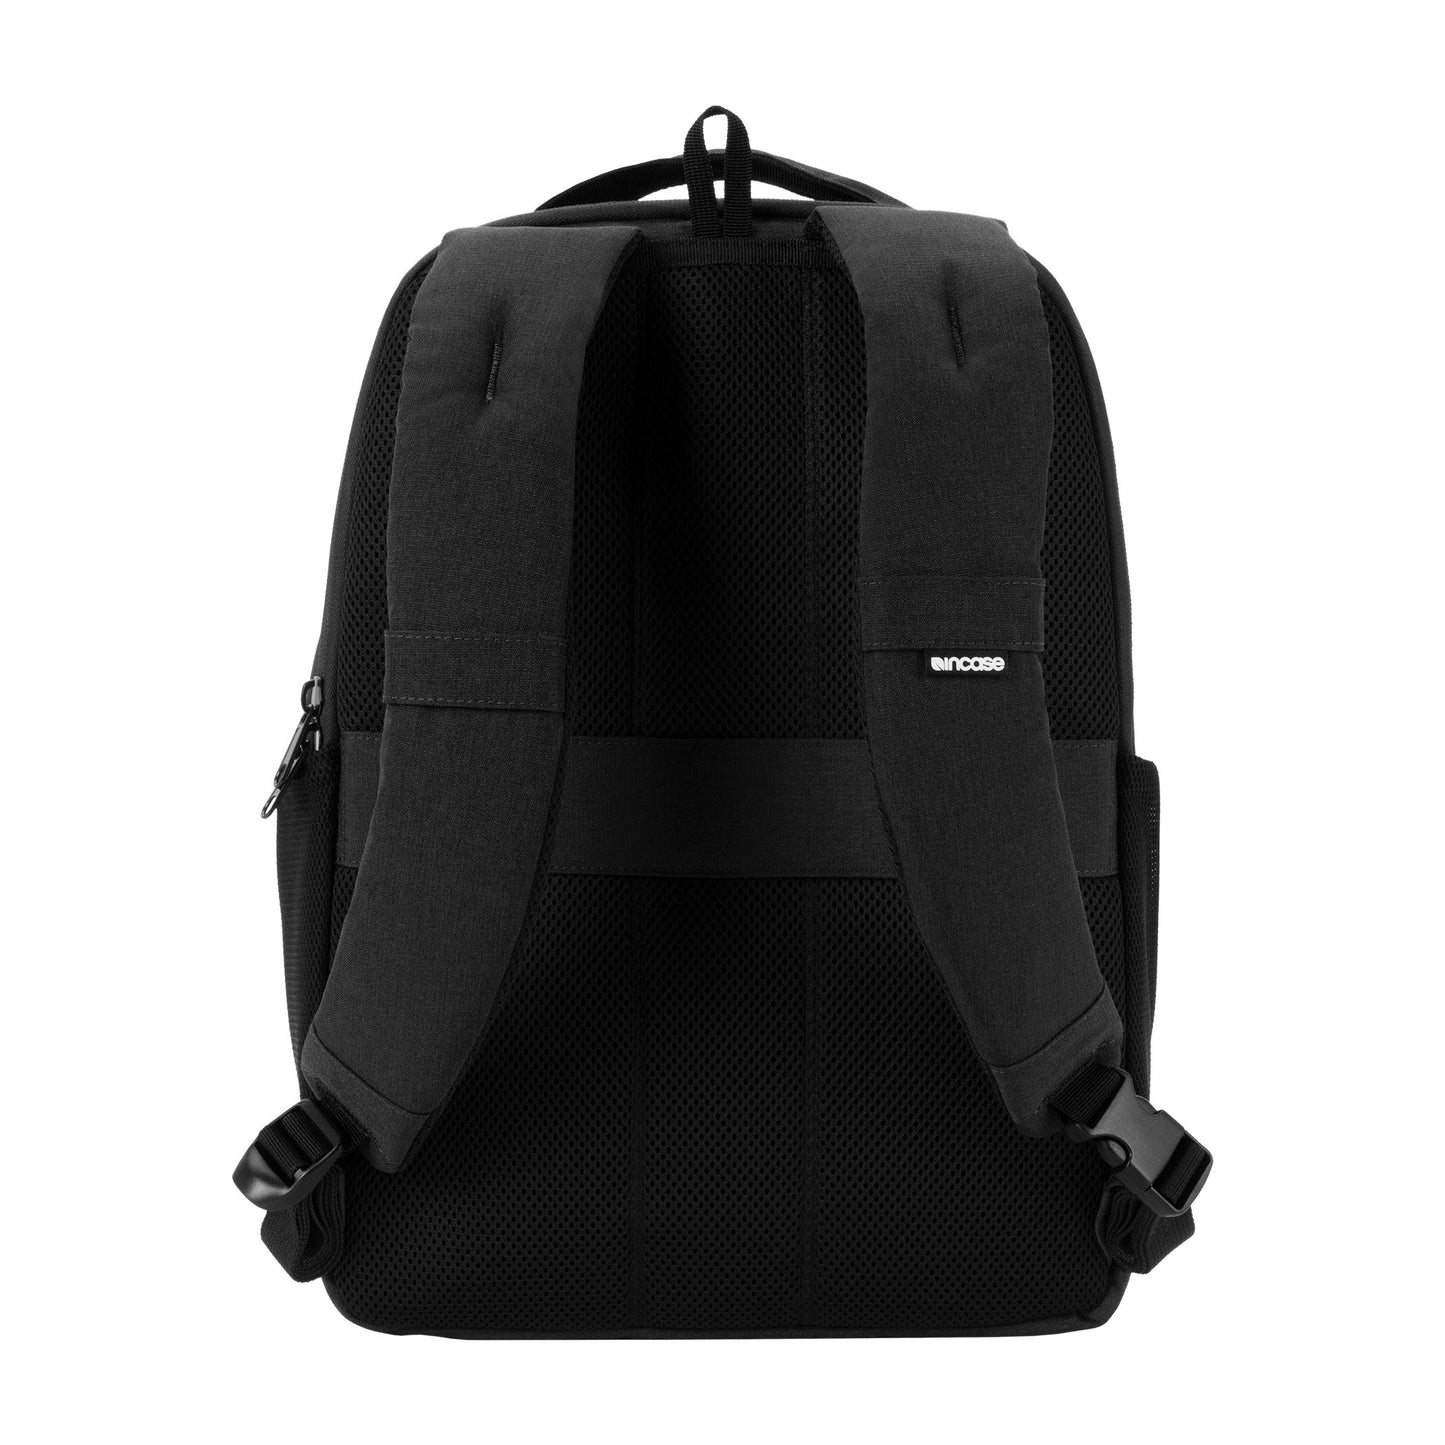 ファセット20lバックパック(Facet 20L Backpack) -黒(ブラック)-軽量-通学-Incase（インケース）公式通販